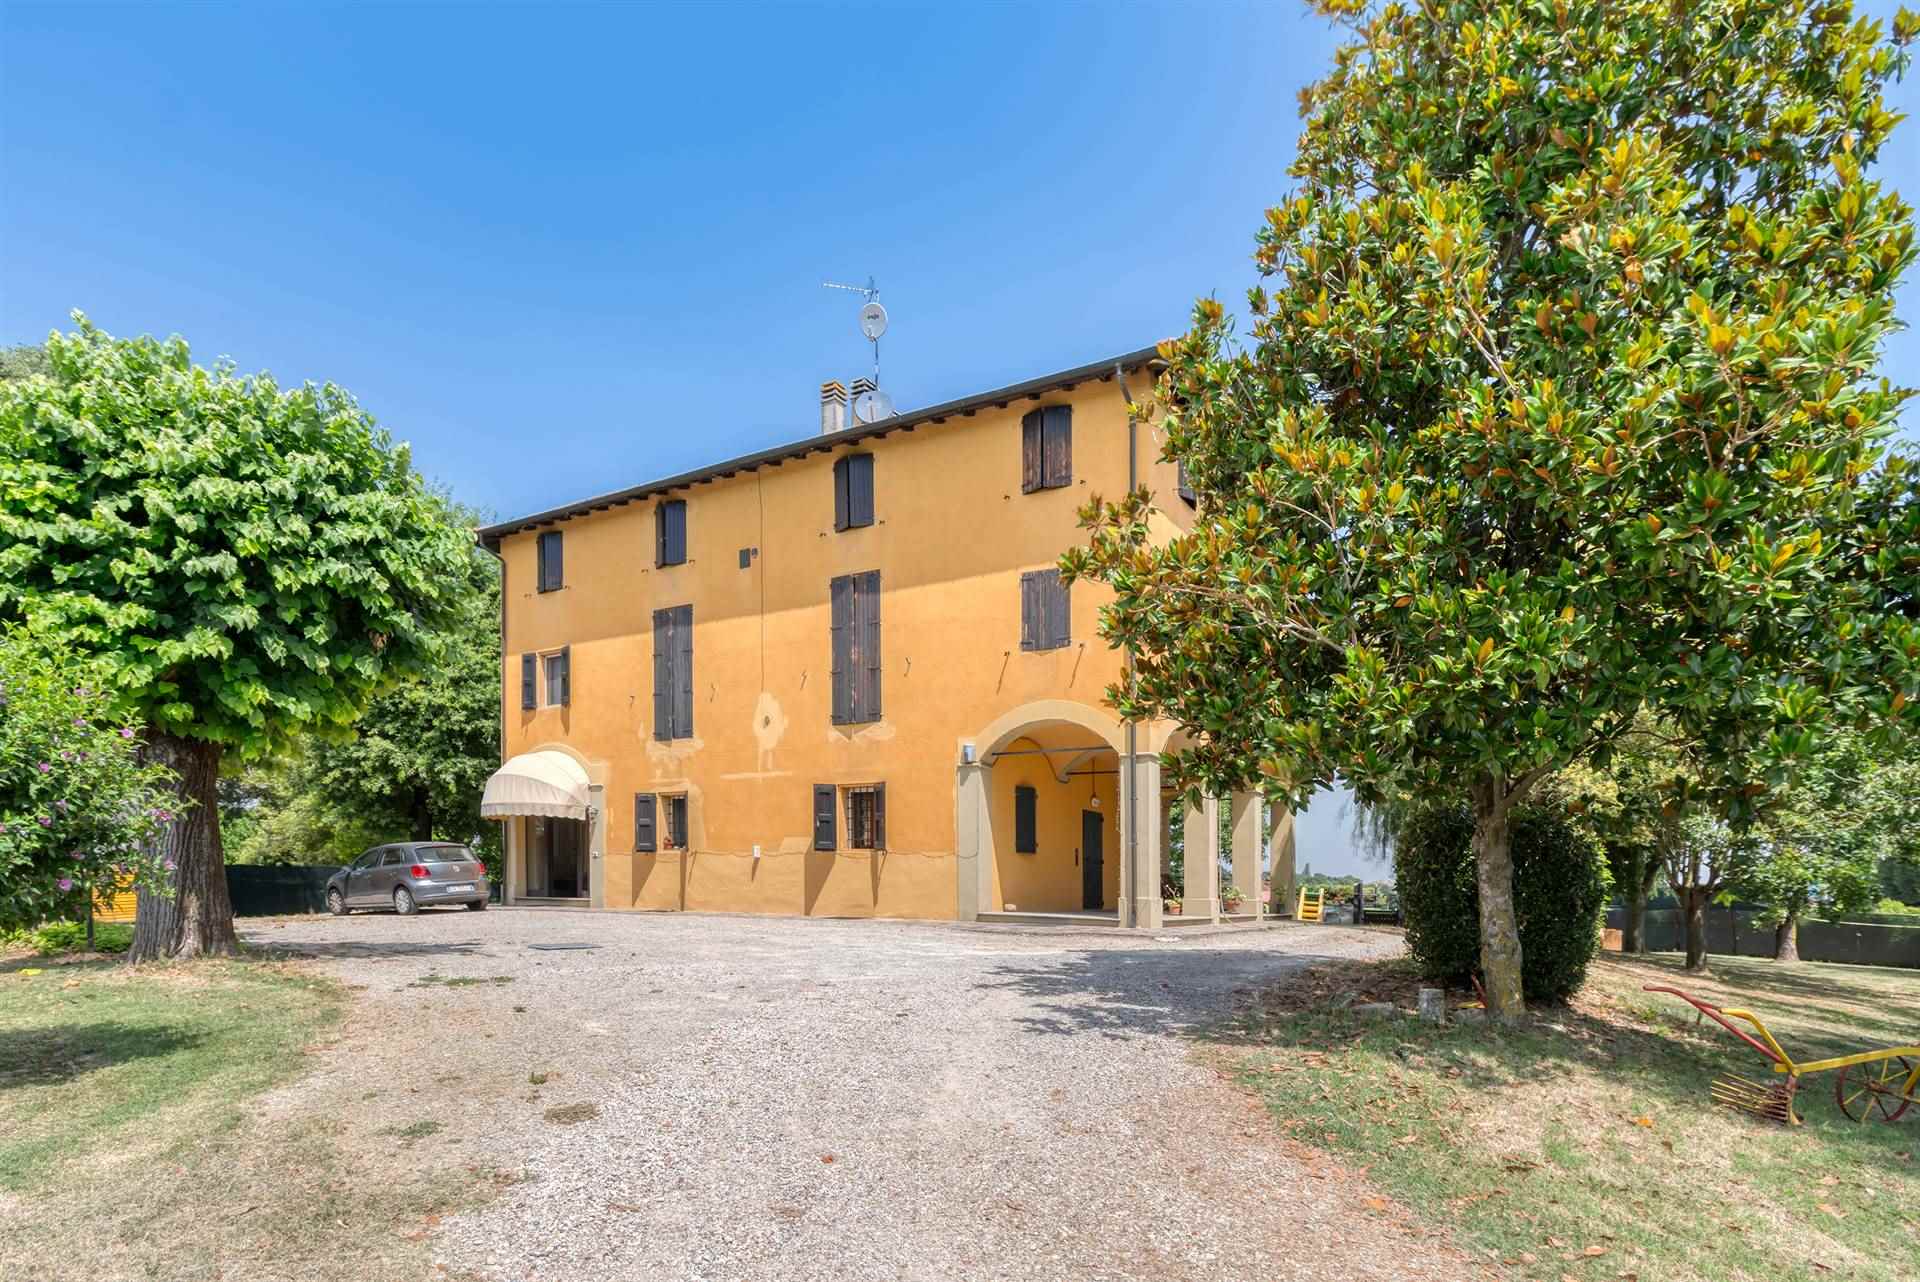 Appartamento in vendita a Budrio, 5 locali, zona aro, prezzo € 195.000 | PortaleAgenzieImmobiliari.it